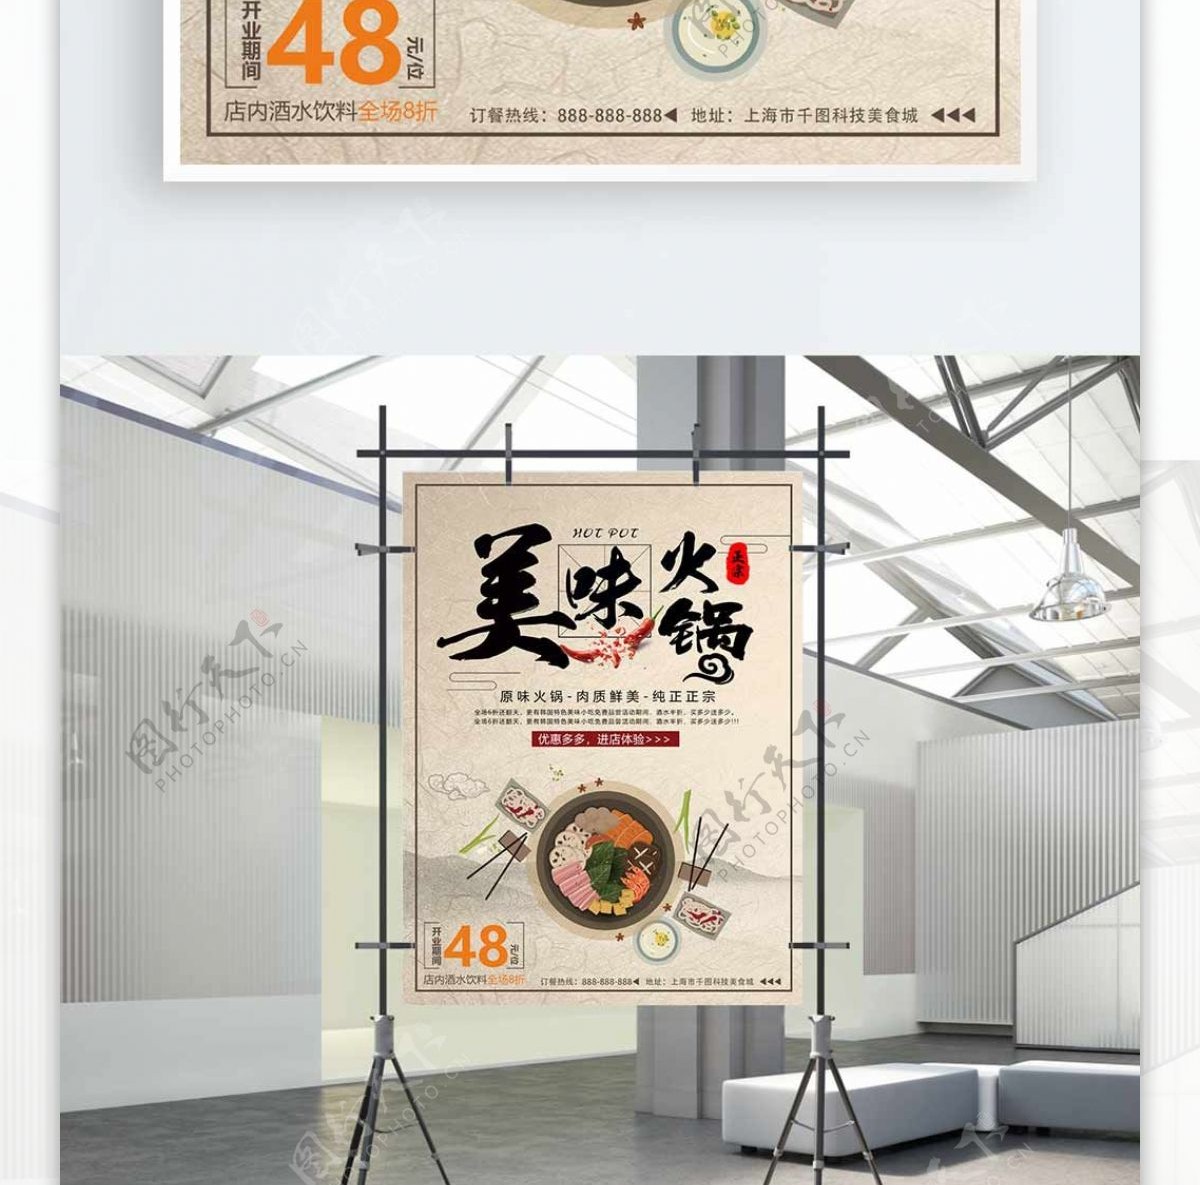 中国风复古火锅促销海报